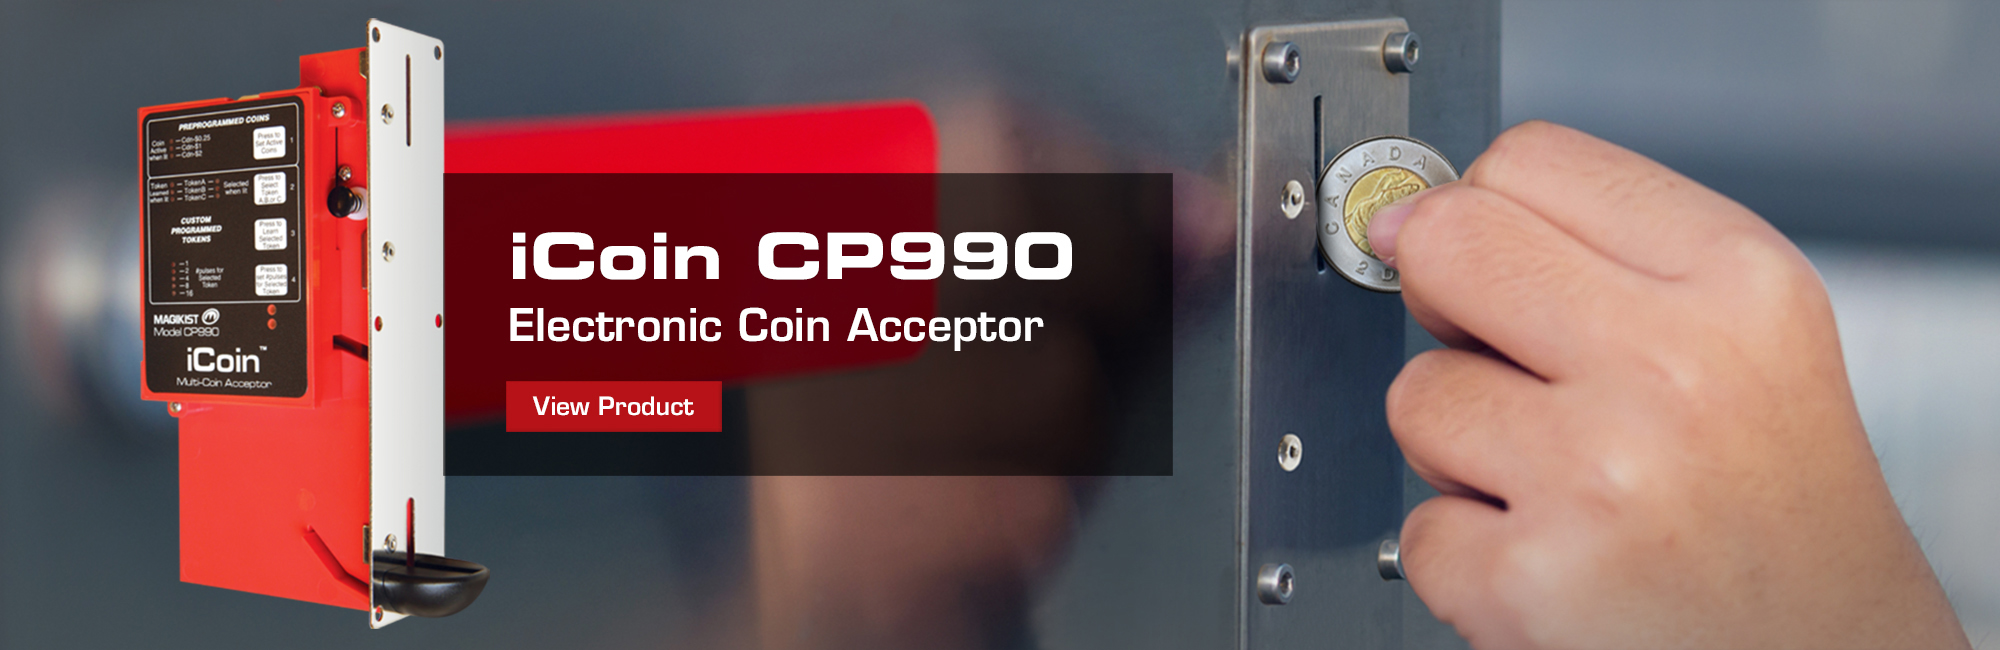 iCoin Acceptor CP990 - electronic coin acceptor